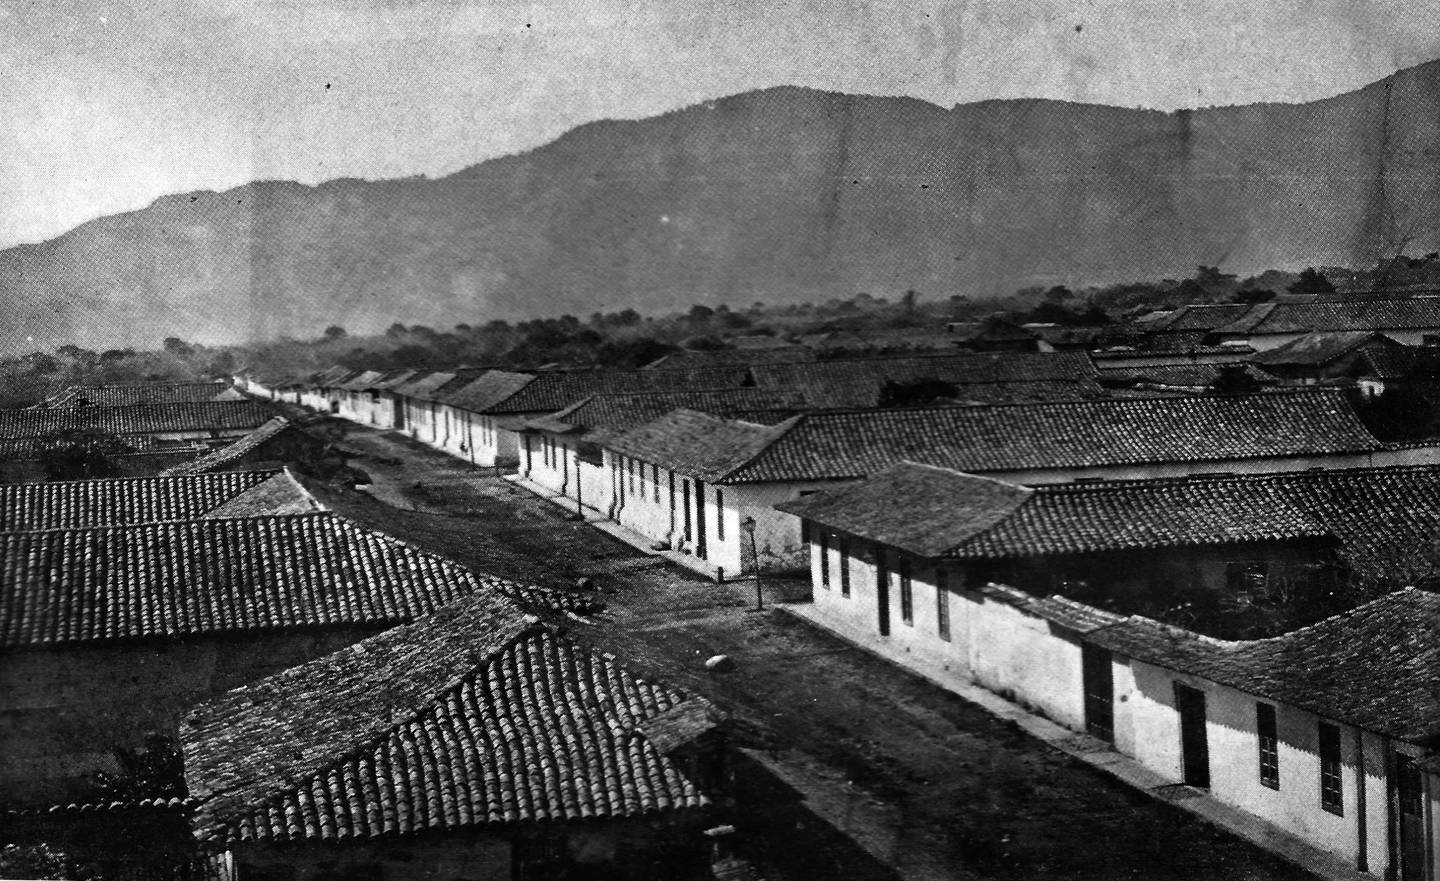 Vista panorámica del sector suroeste de la ciudad de San José, en la
década de 1870. Fotografía de autor no determinado. Andrés Fdez. para LN.